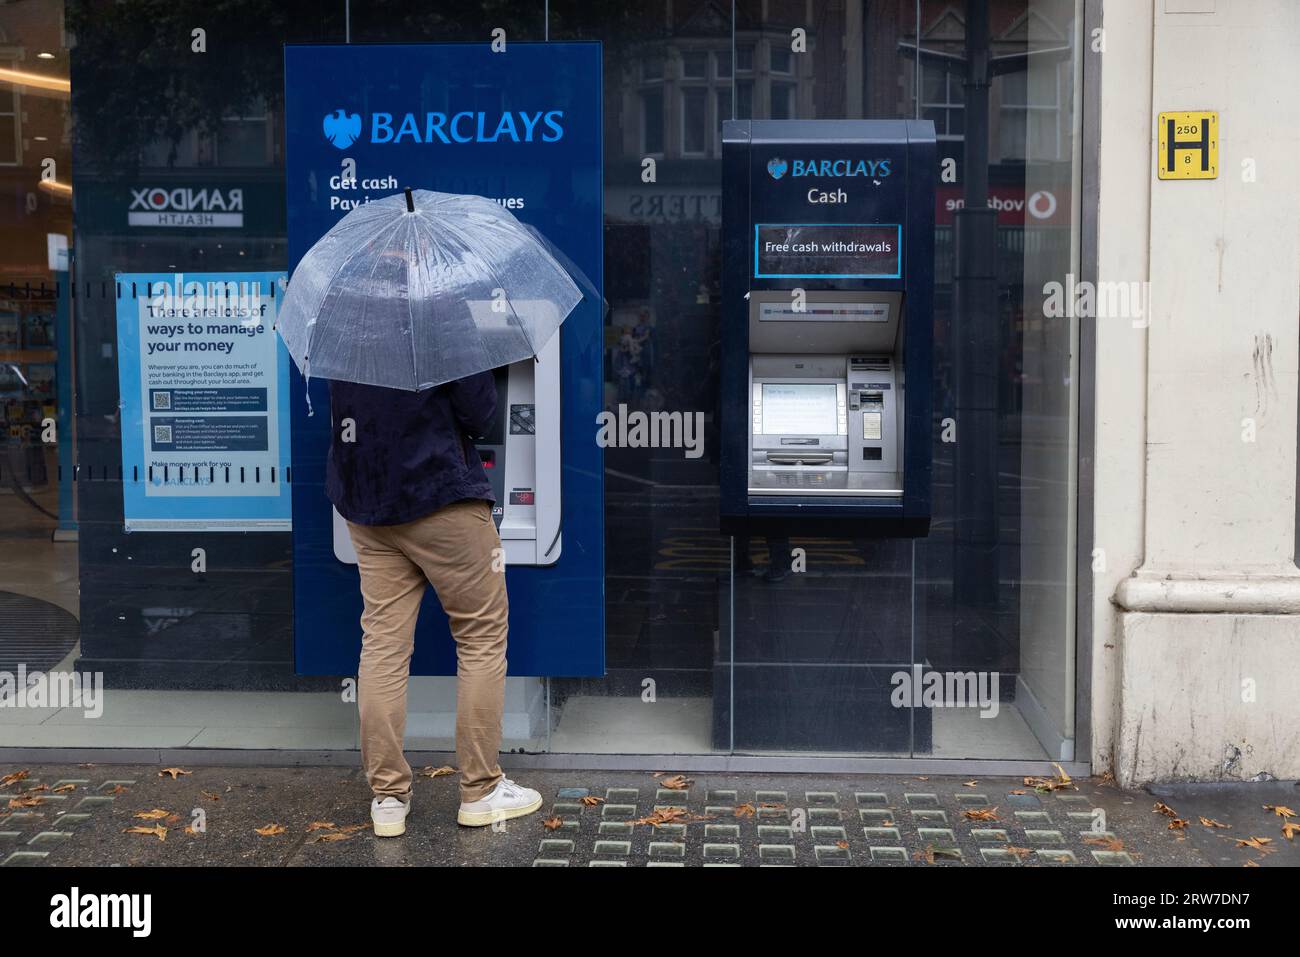 Uomo con ombrello che ritira contanti da un distributore di contanti della banca Barclays, High Street Kensington, Londra, Inghilterra, Regno Unito Foto Stock